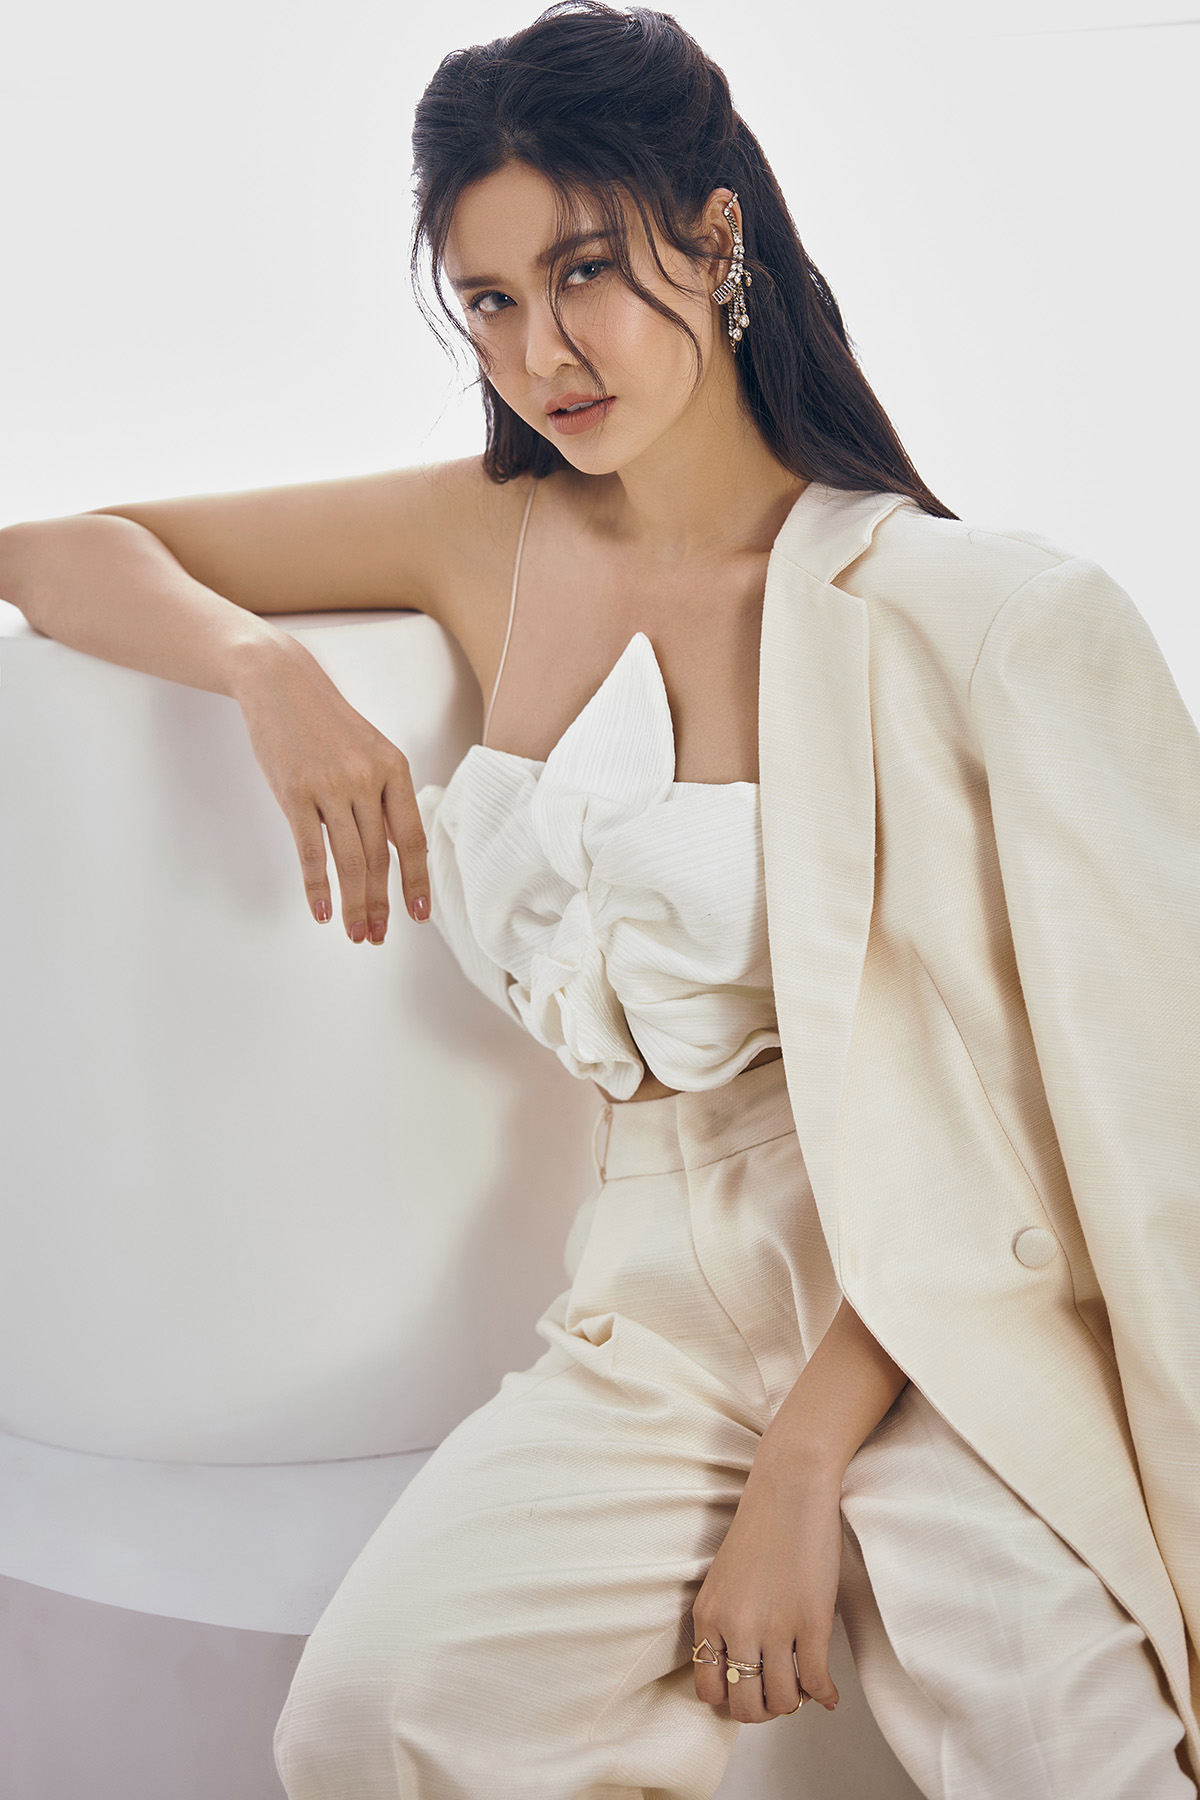 Trương Quỳnh Anh ra dáng “chị đại” trong bộ ảnh cá tính